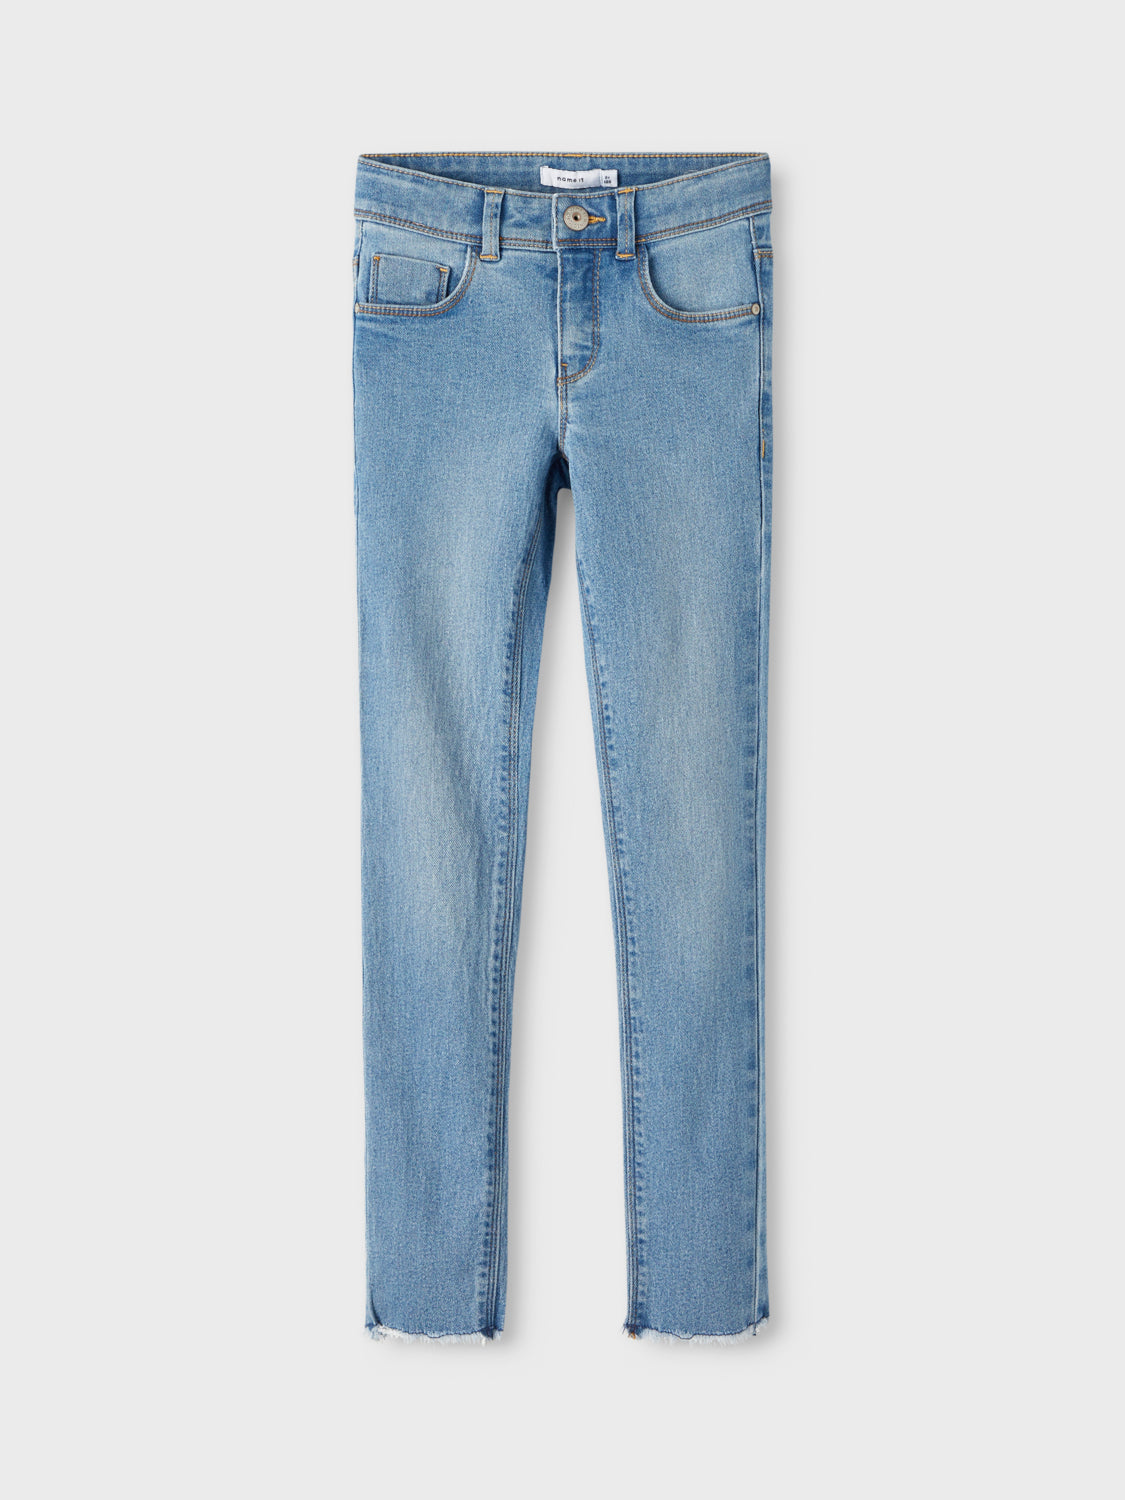 NKFPOLLY Jeans - Light Blue Denim